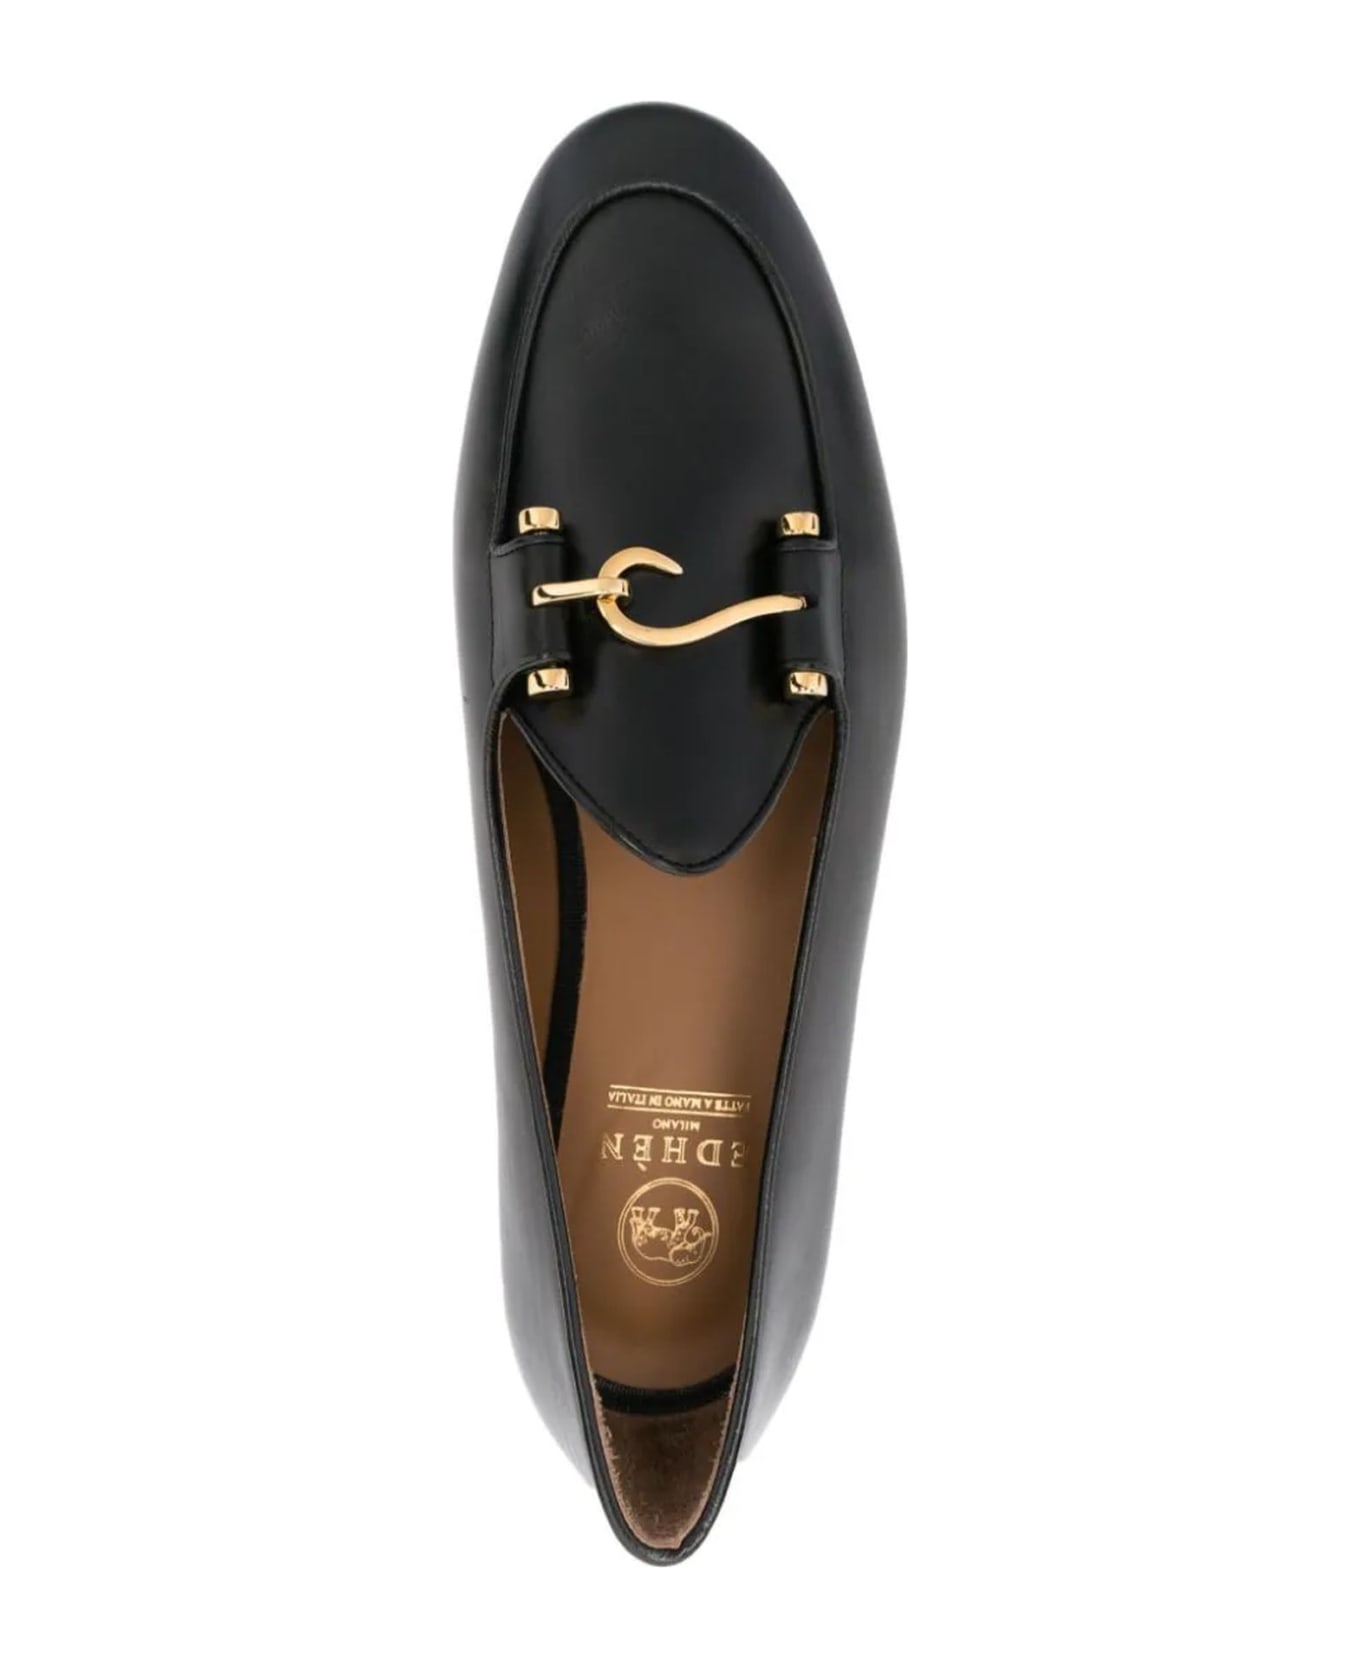 Edhen Milano Black Calf Leather Comporta Loafers - Nero